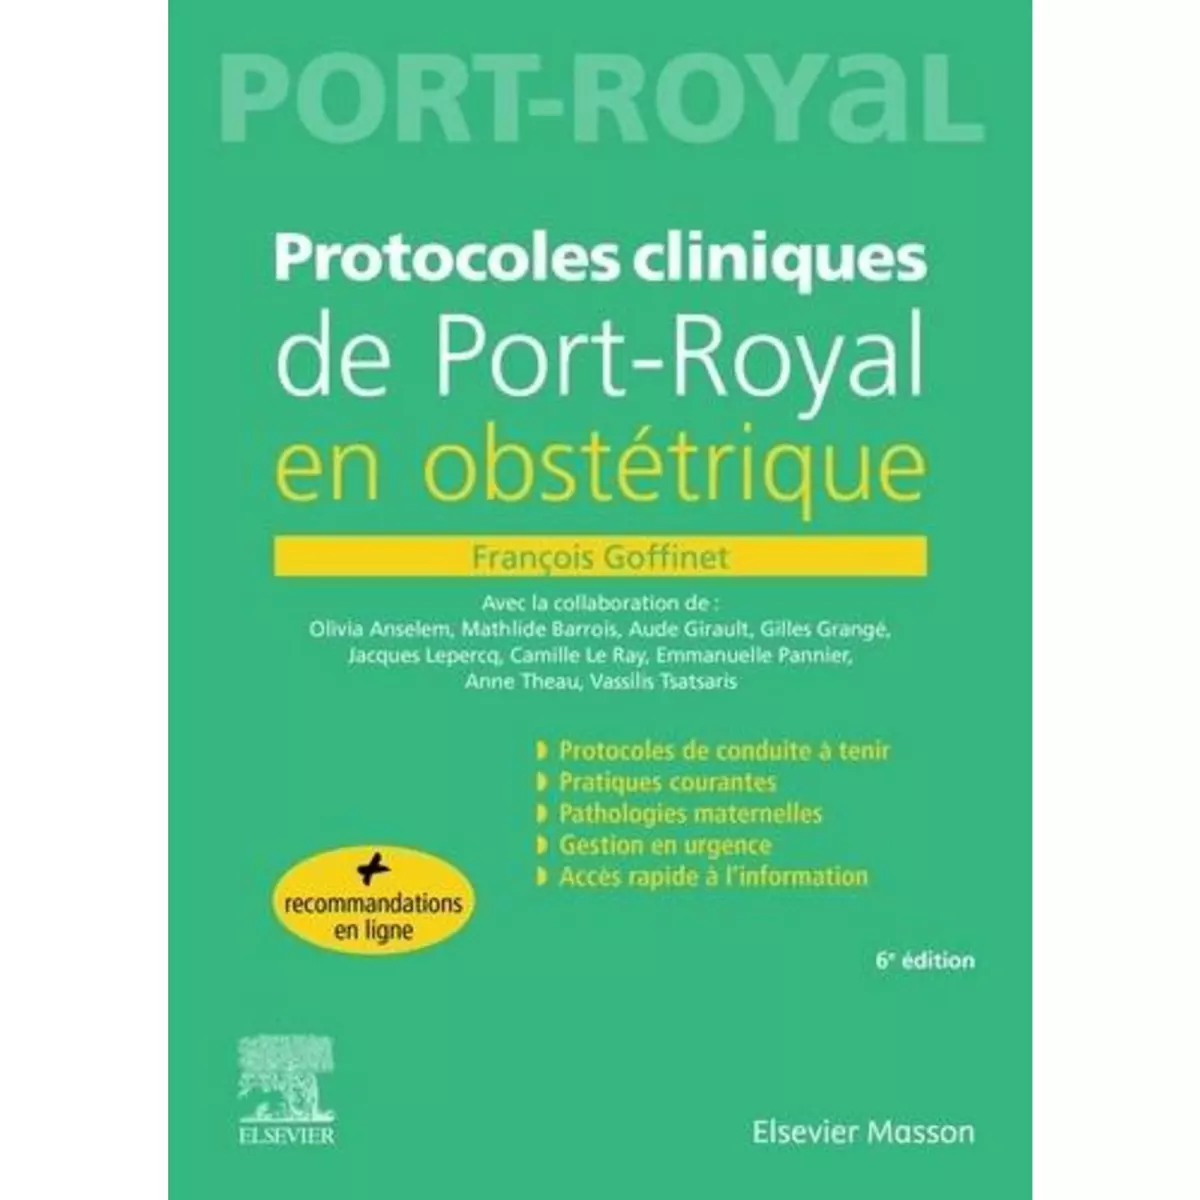  PROTOCOLES CLINIQUES DE PORT-ROYAL EN OBSTETRIQUE. 6E EDITION, Goffinet François